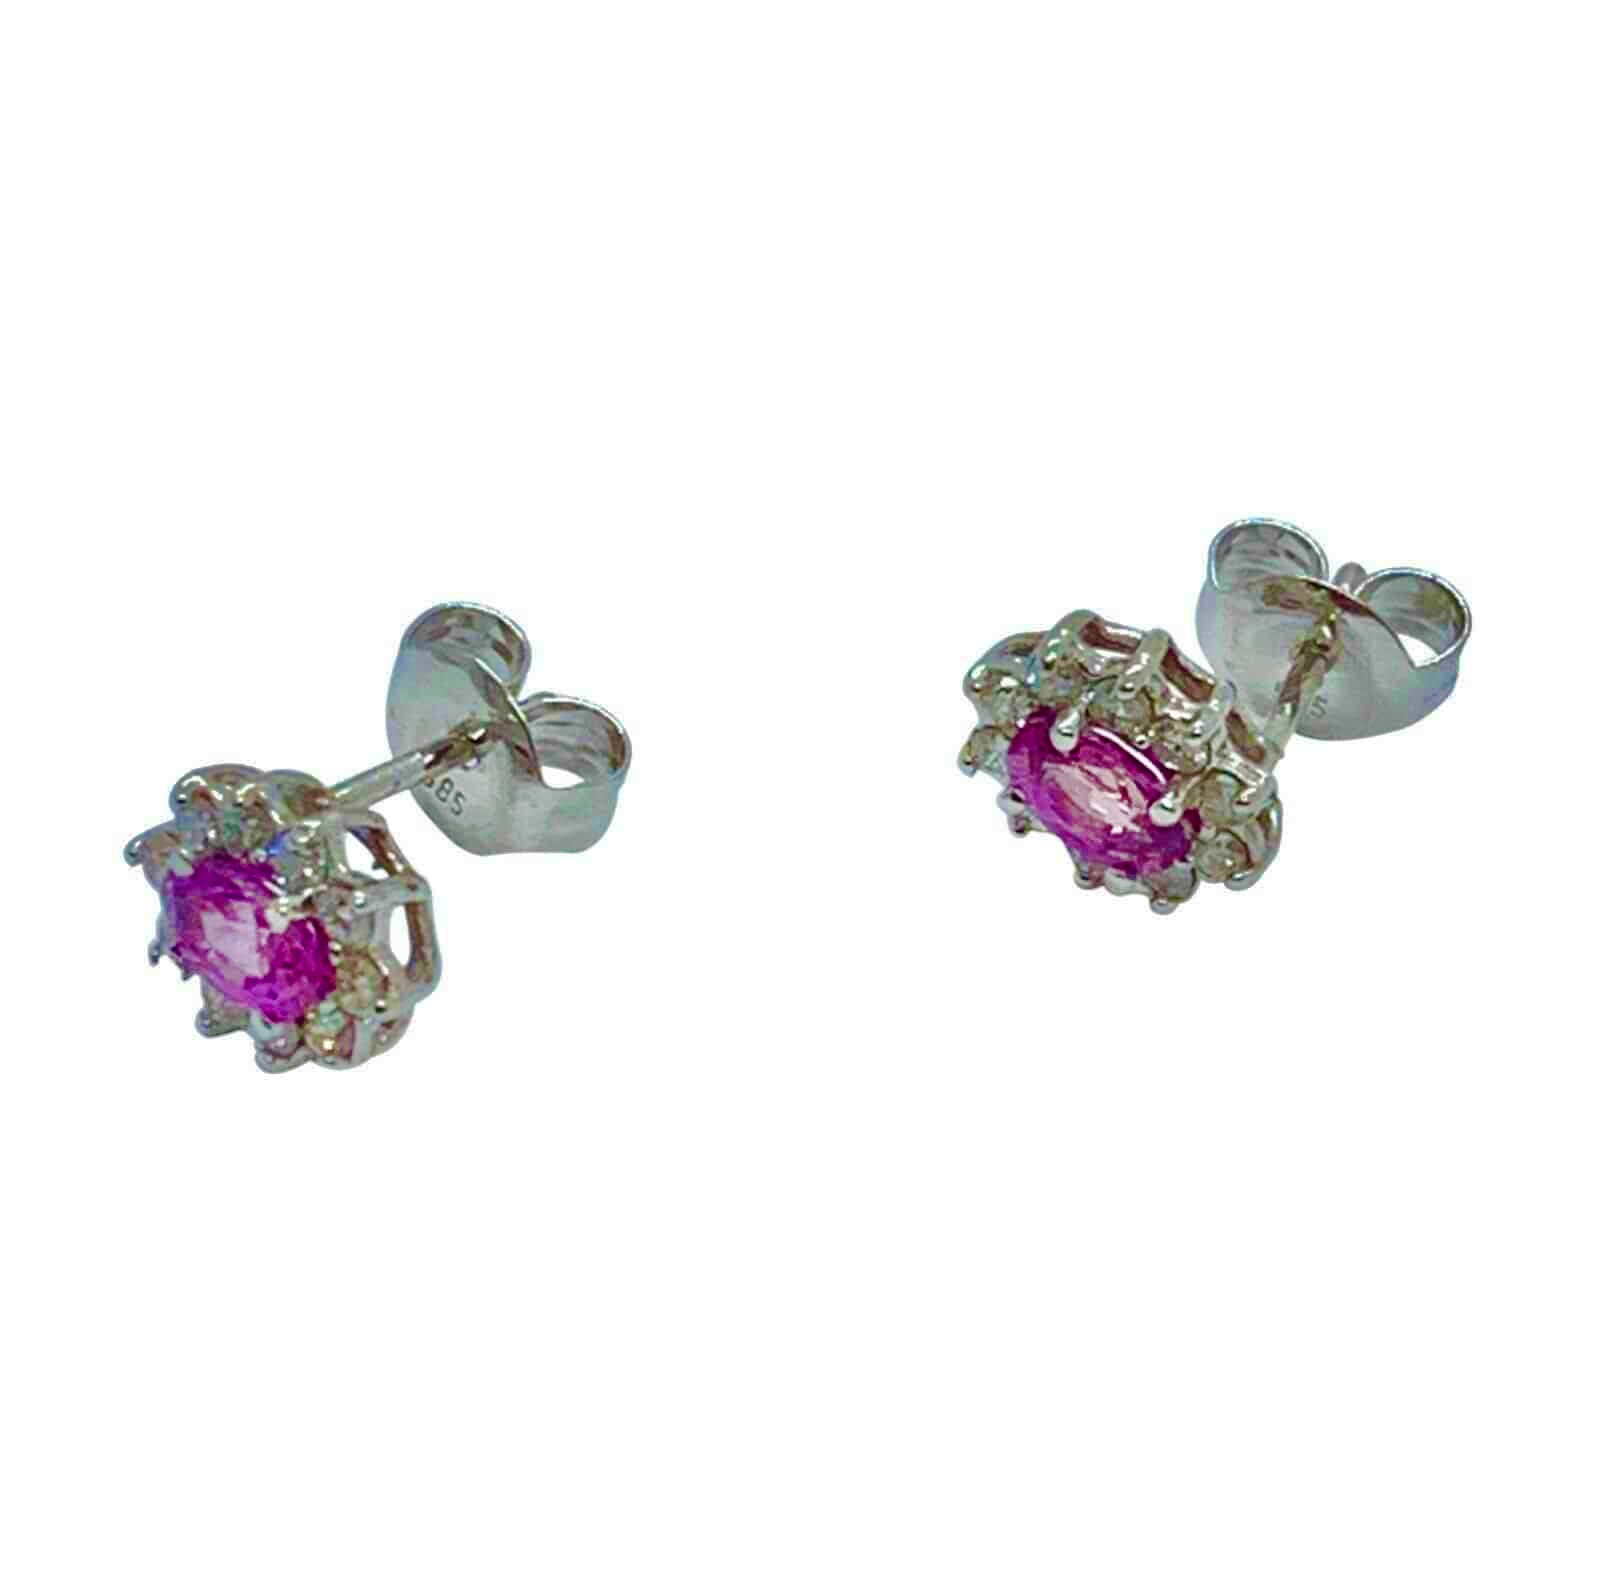 Diamond Sapphire Earrings 18k Gold Stud .90 CTW Certified $2,490 921516 - Certified Fine Jewelry